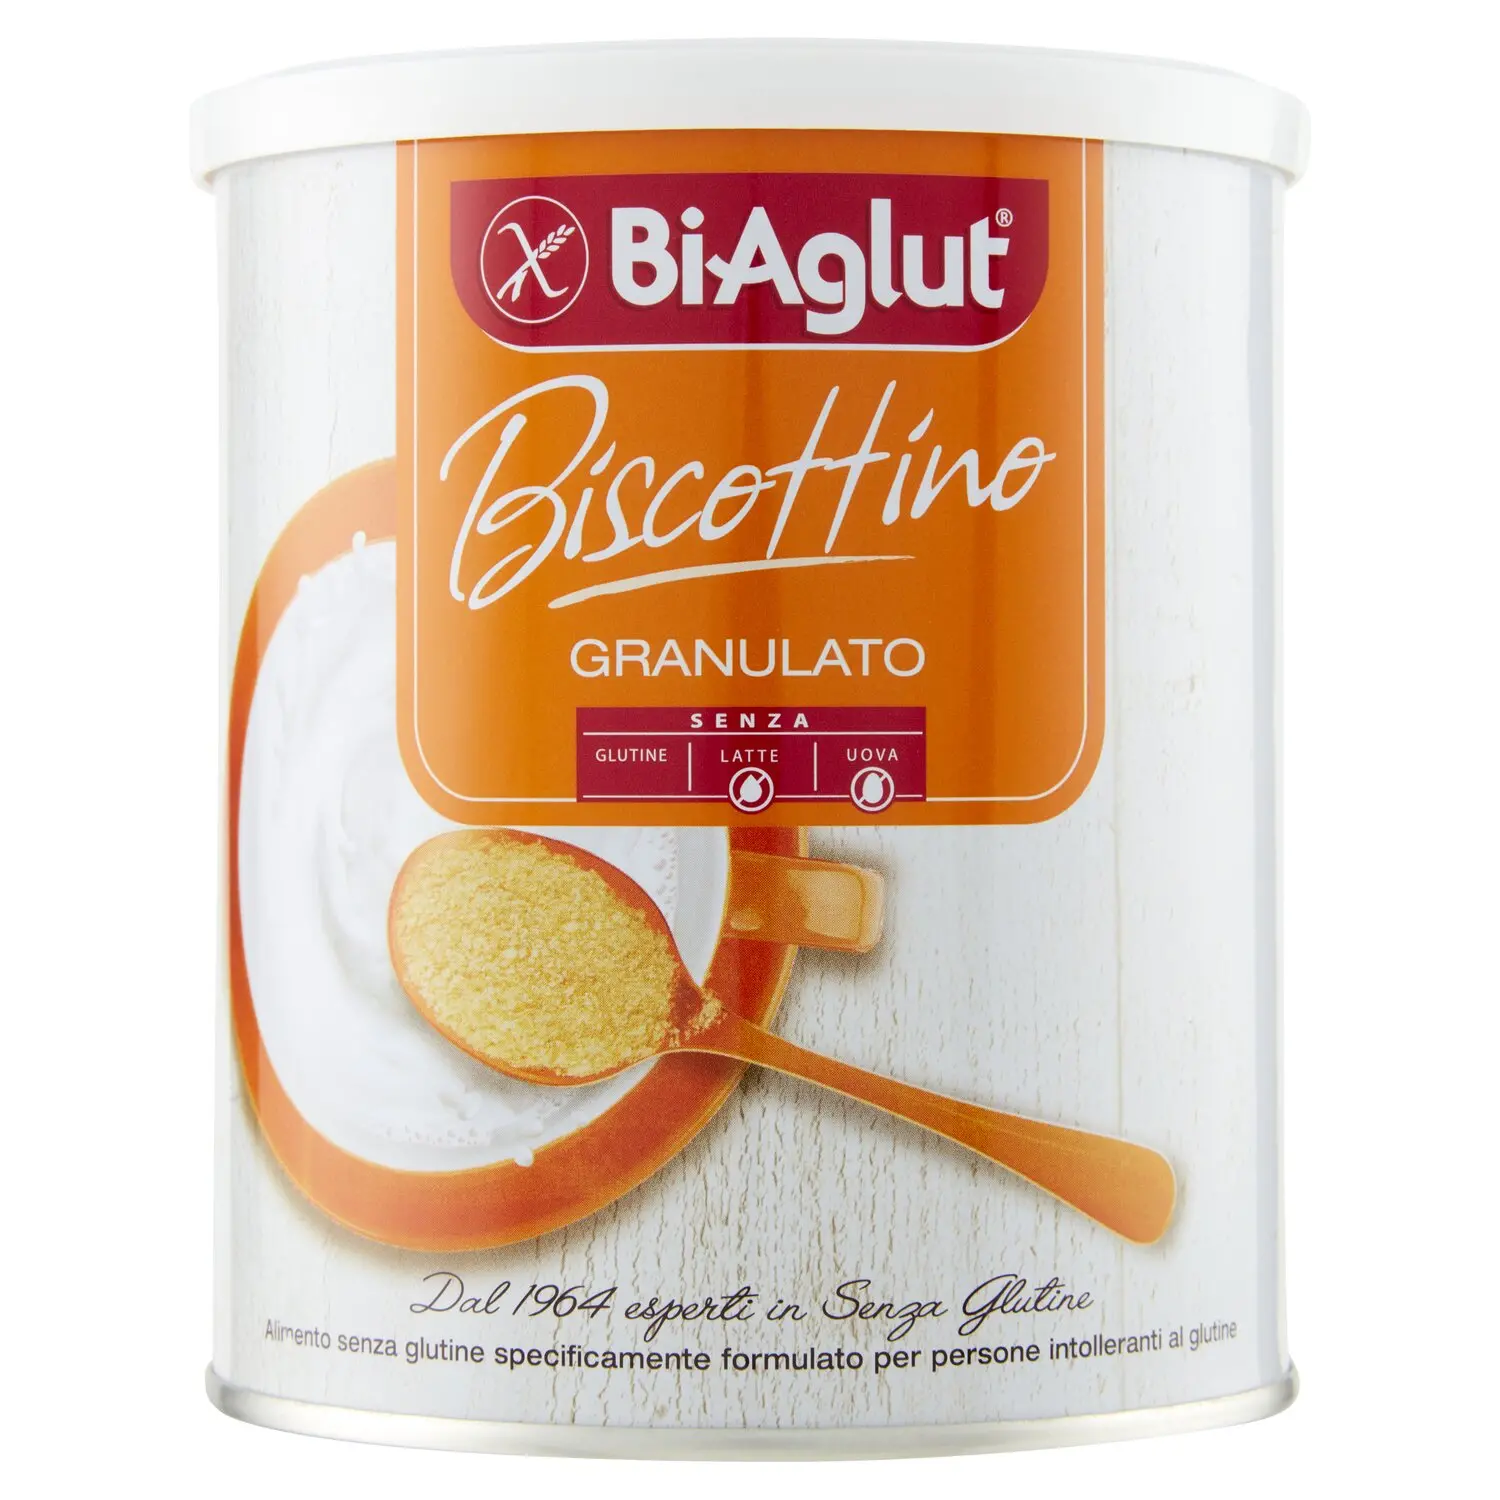 BiAglut Biscottino Granulato 340 g